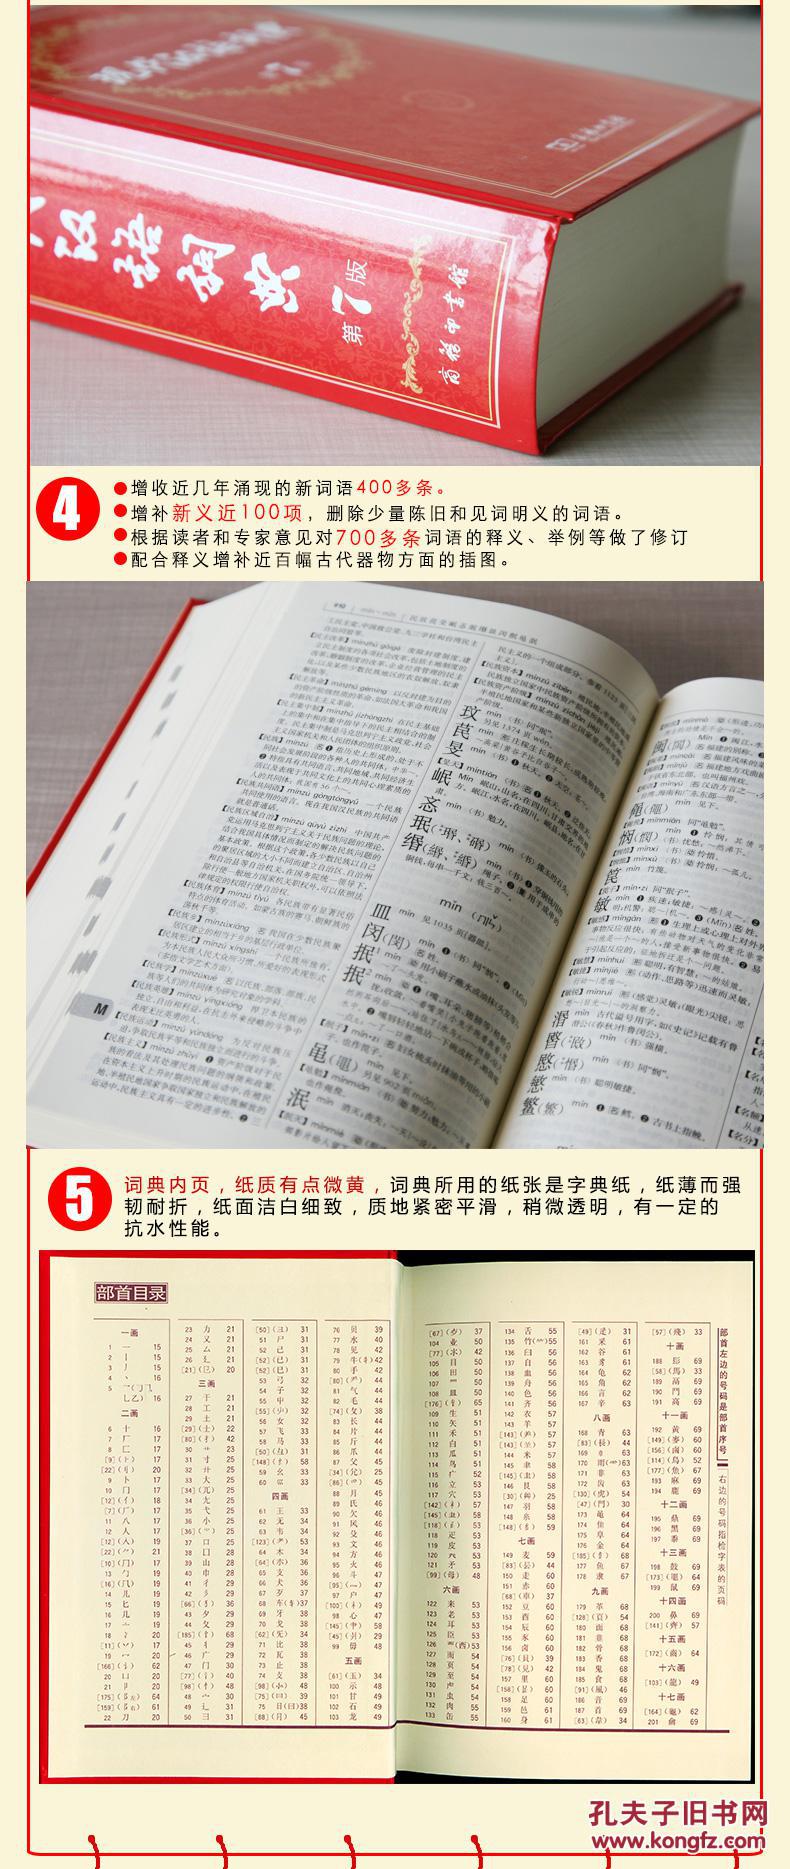 【图】现代汉语词典第7版精装+古汉语常用字